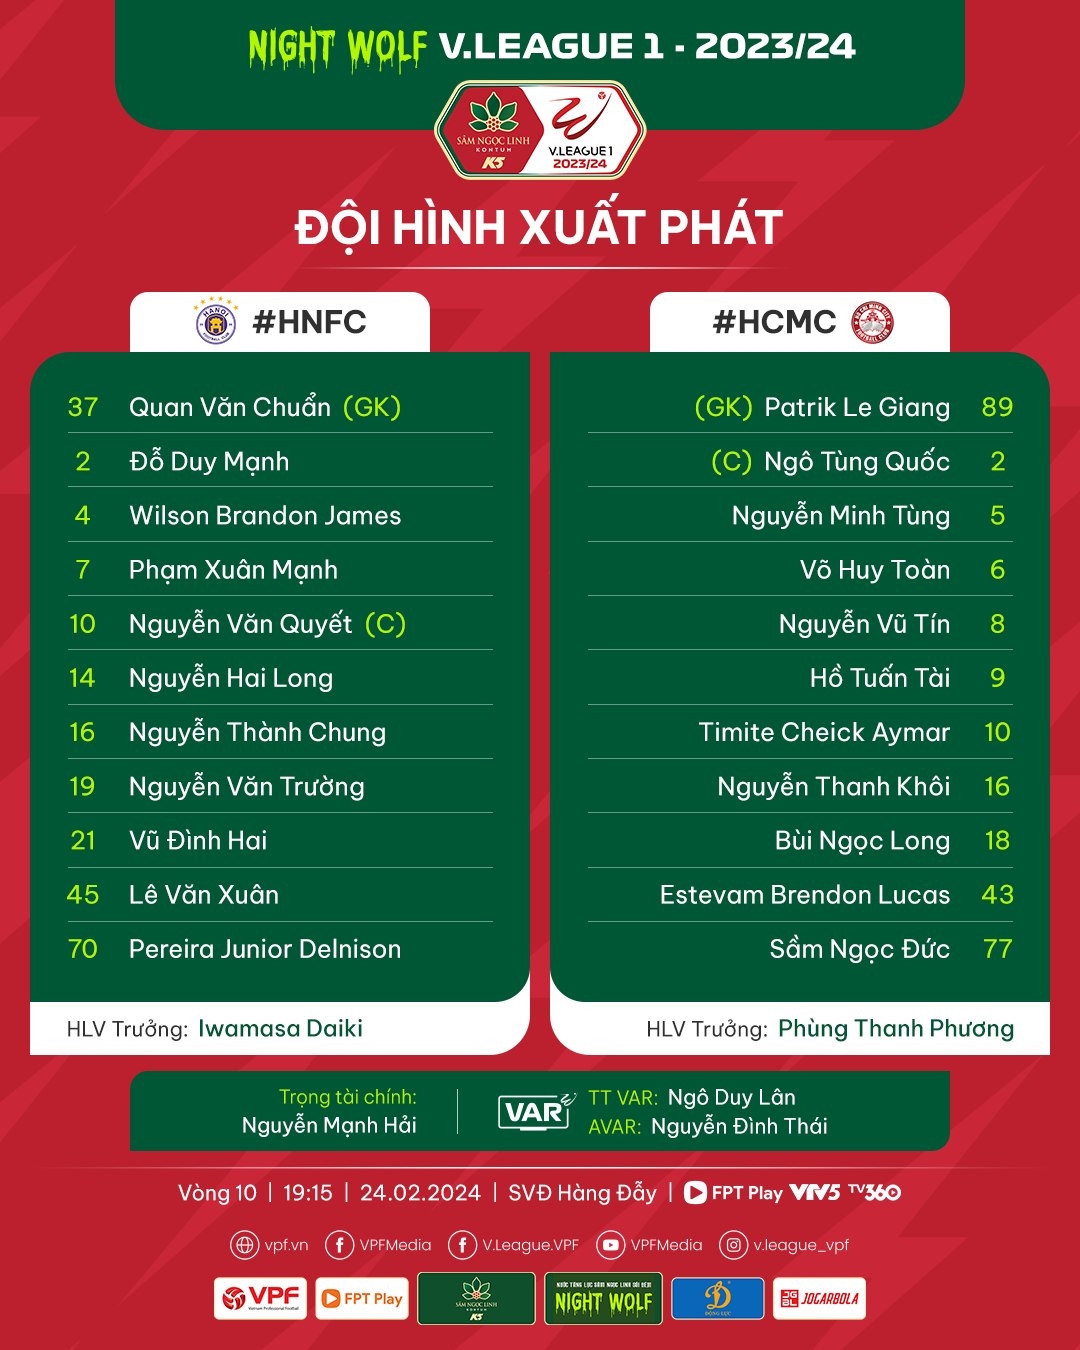 Chơi hơn người từ sớm, Hà Nội FC thắng dễ CLB TP.HCM - Bóng Đá